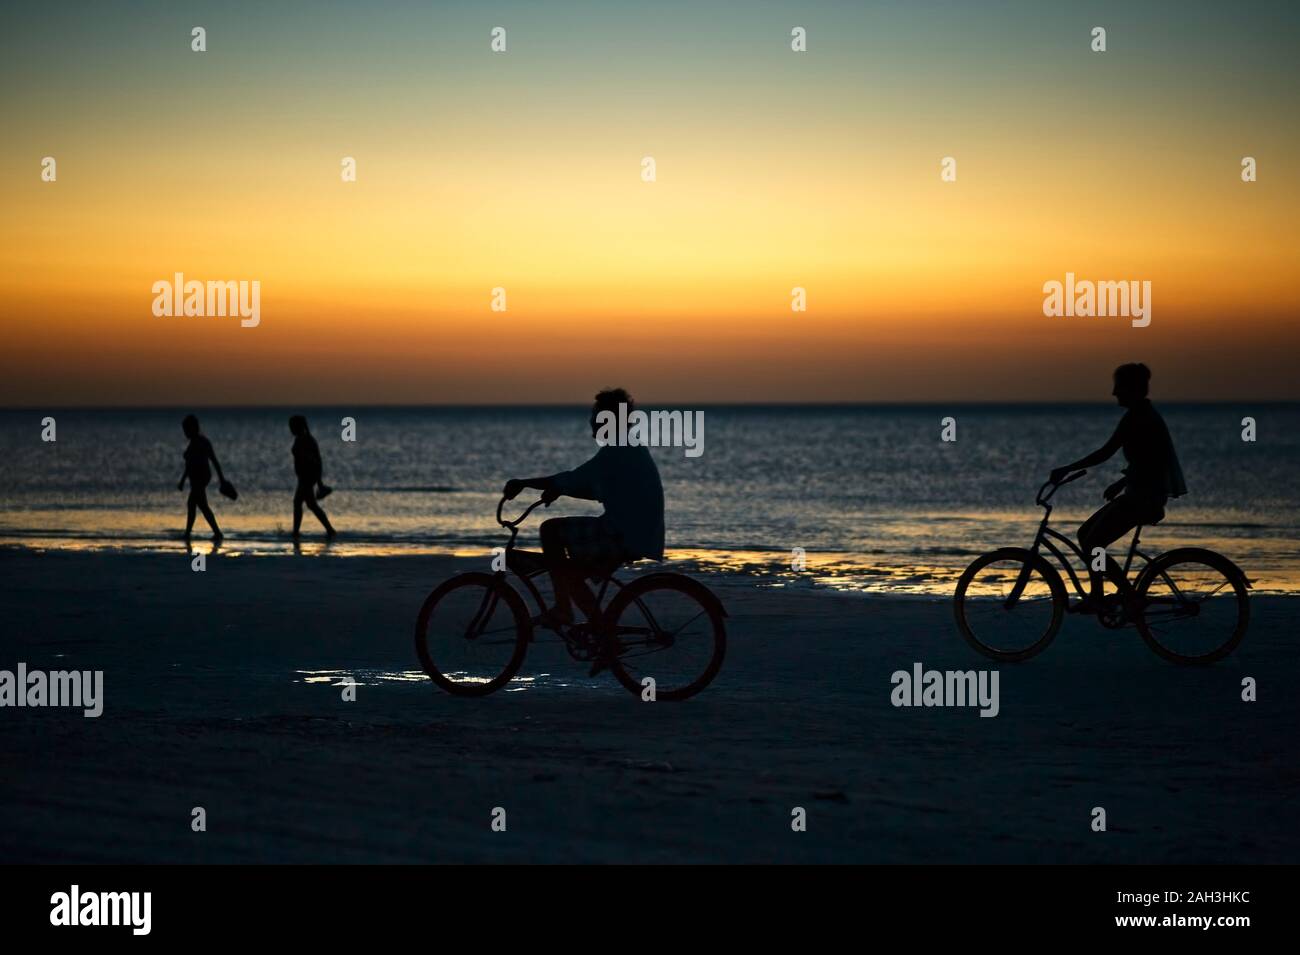 Una corsa in bicicletta sull'isola di Holbox spiaggia tramonto in Messico. Persone in bicicletta sulla spiaggia caraibica al tramonto. Foto Stock